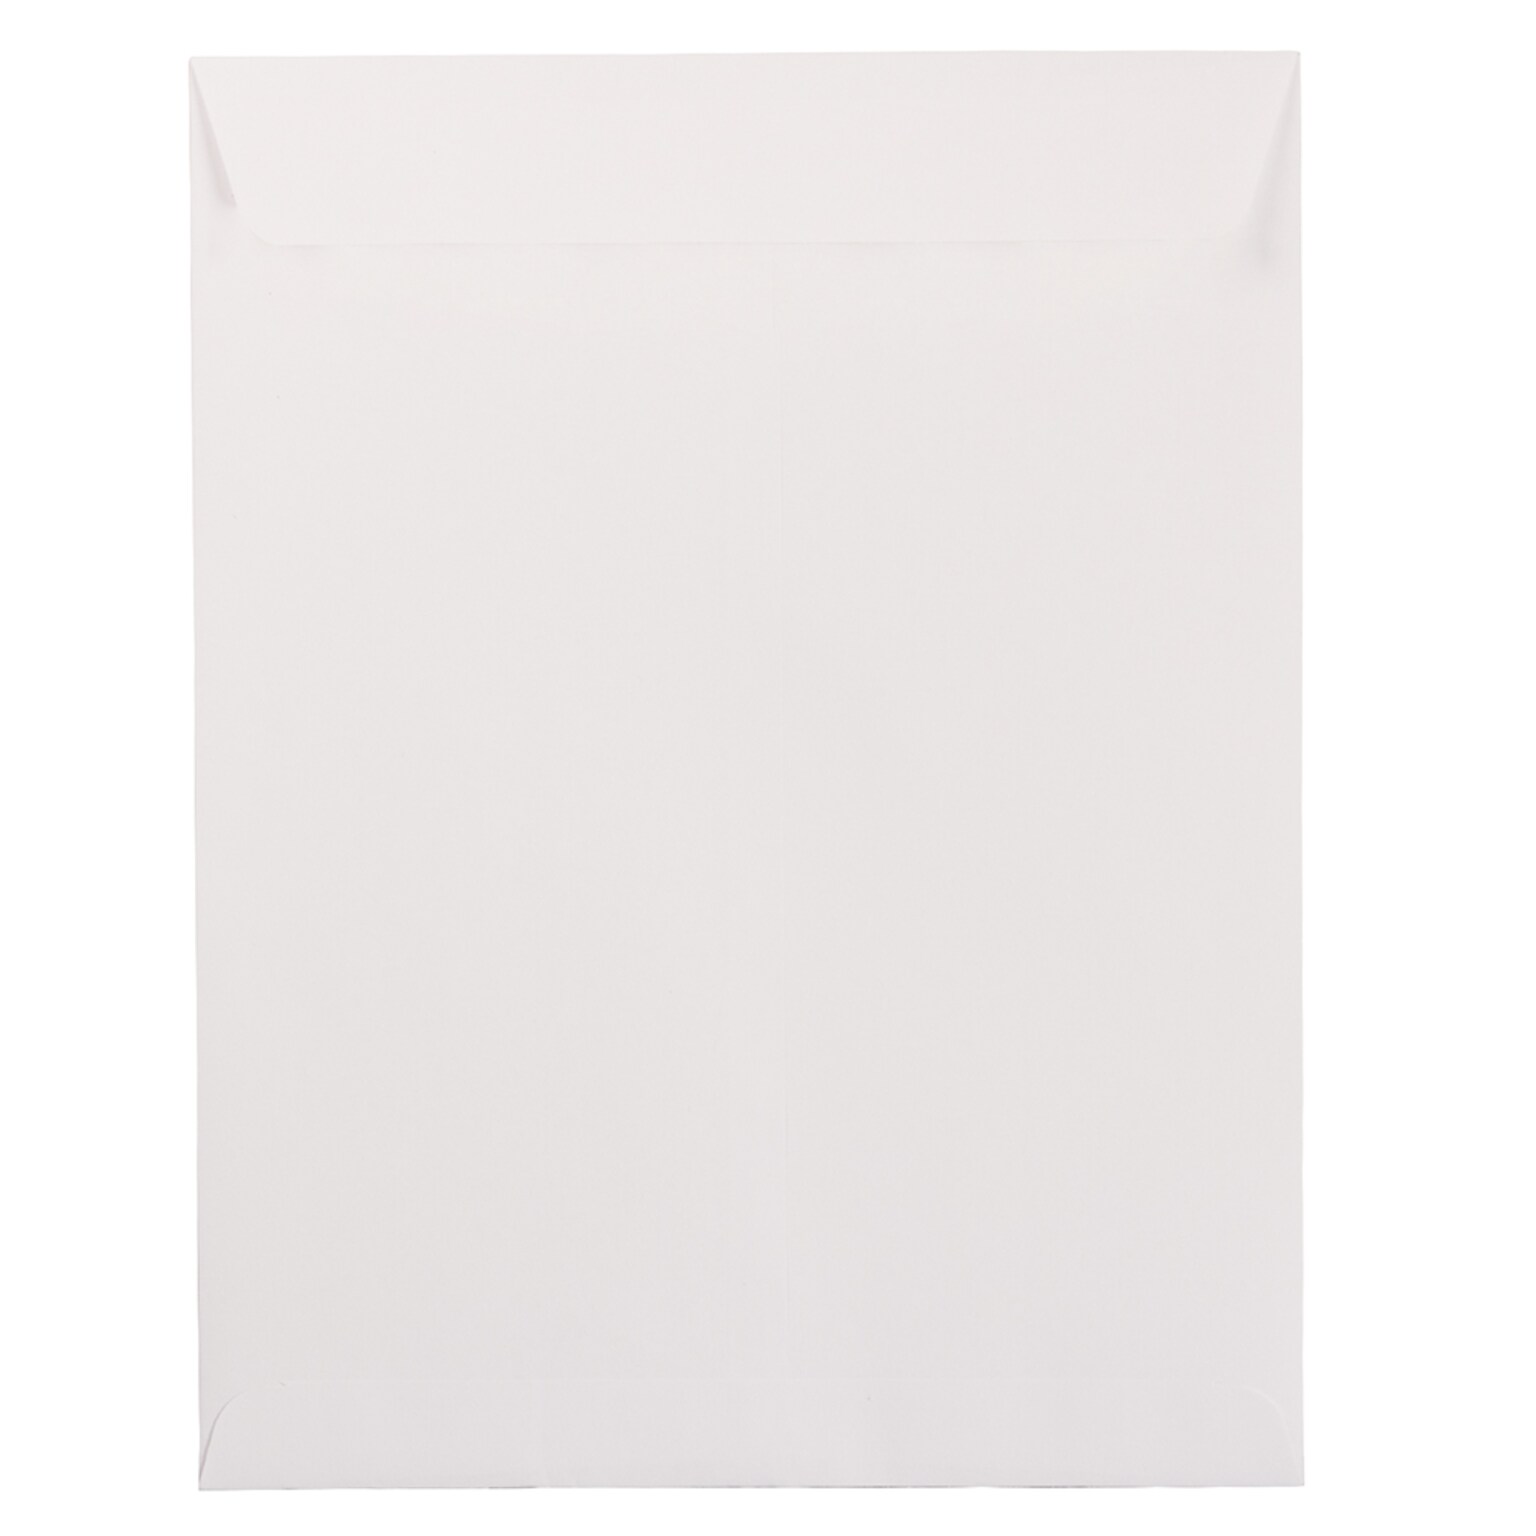 JAM Paper Open End #13 Catalog Envelope, 10 x 13, White, 50/Pack (1623199I)